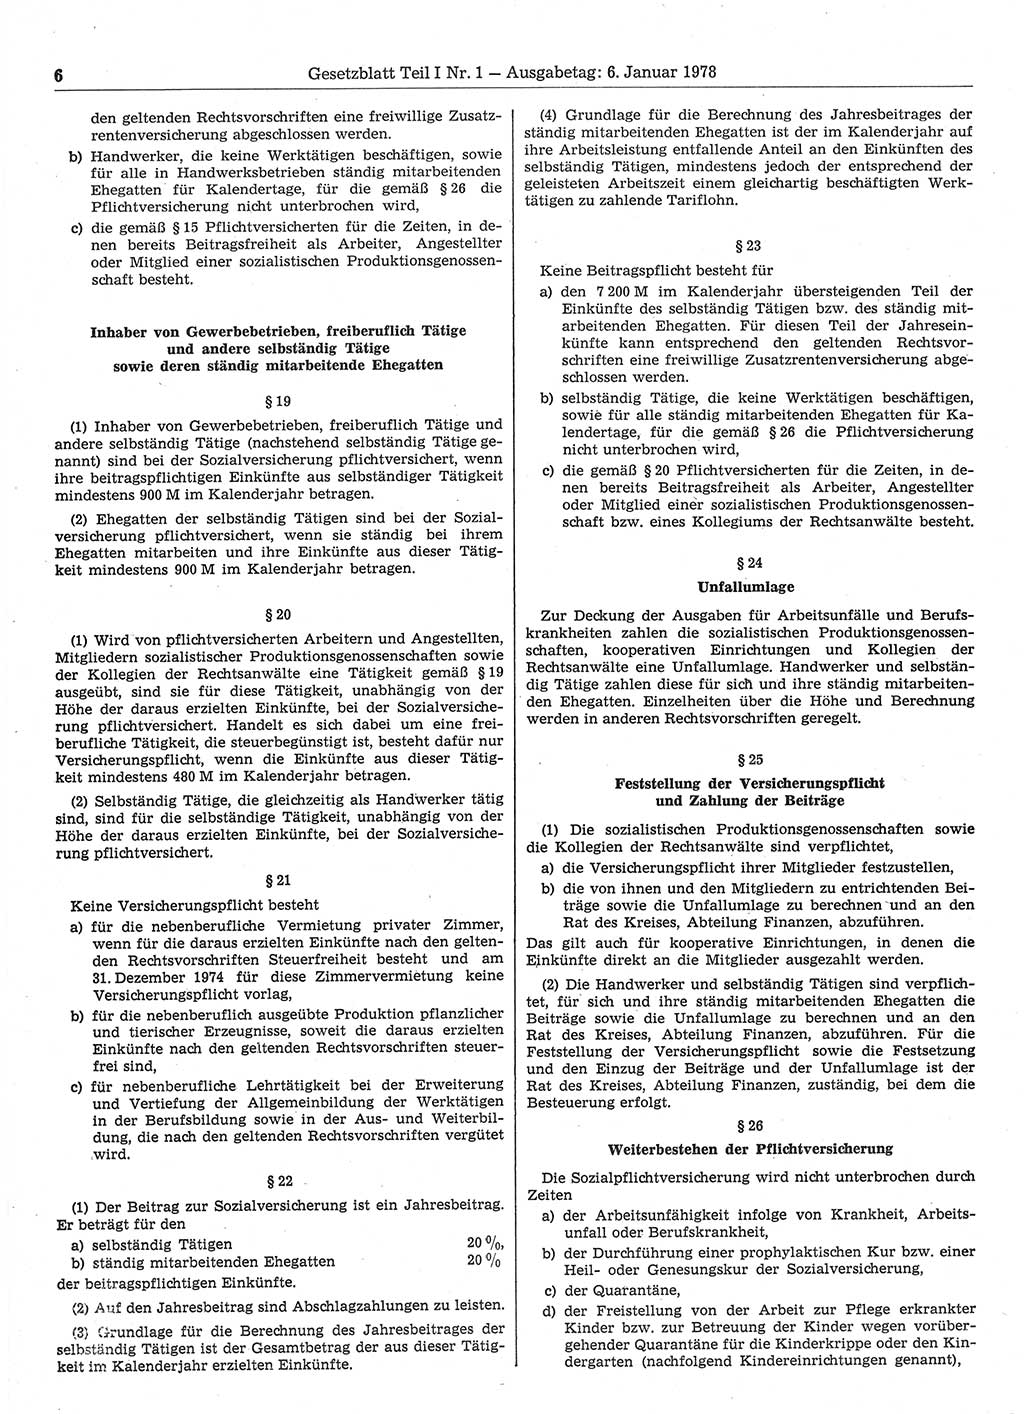 Gesetzblatt (GBl.) der Deutschen Demokratischen Republik (DDR) Teil Ⅰ 1978, Seite 6 (GBl. DDR Ⅰ 1978, S. 6)